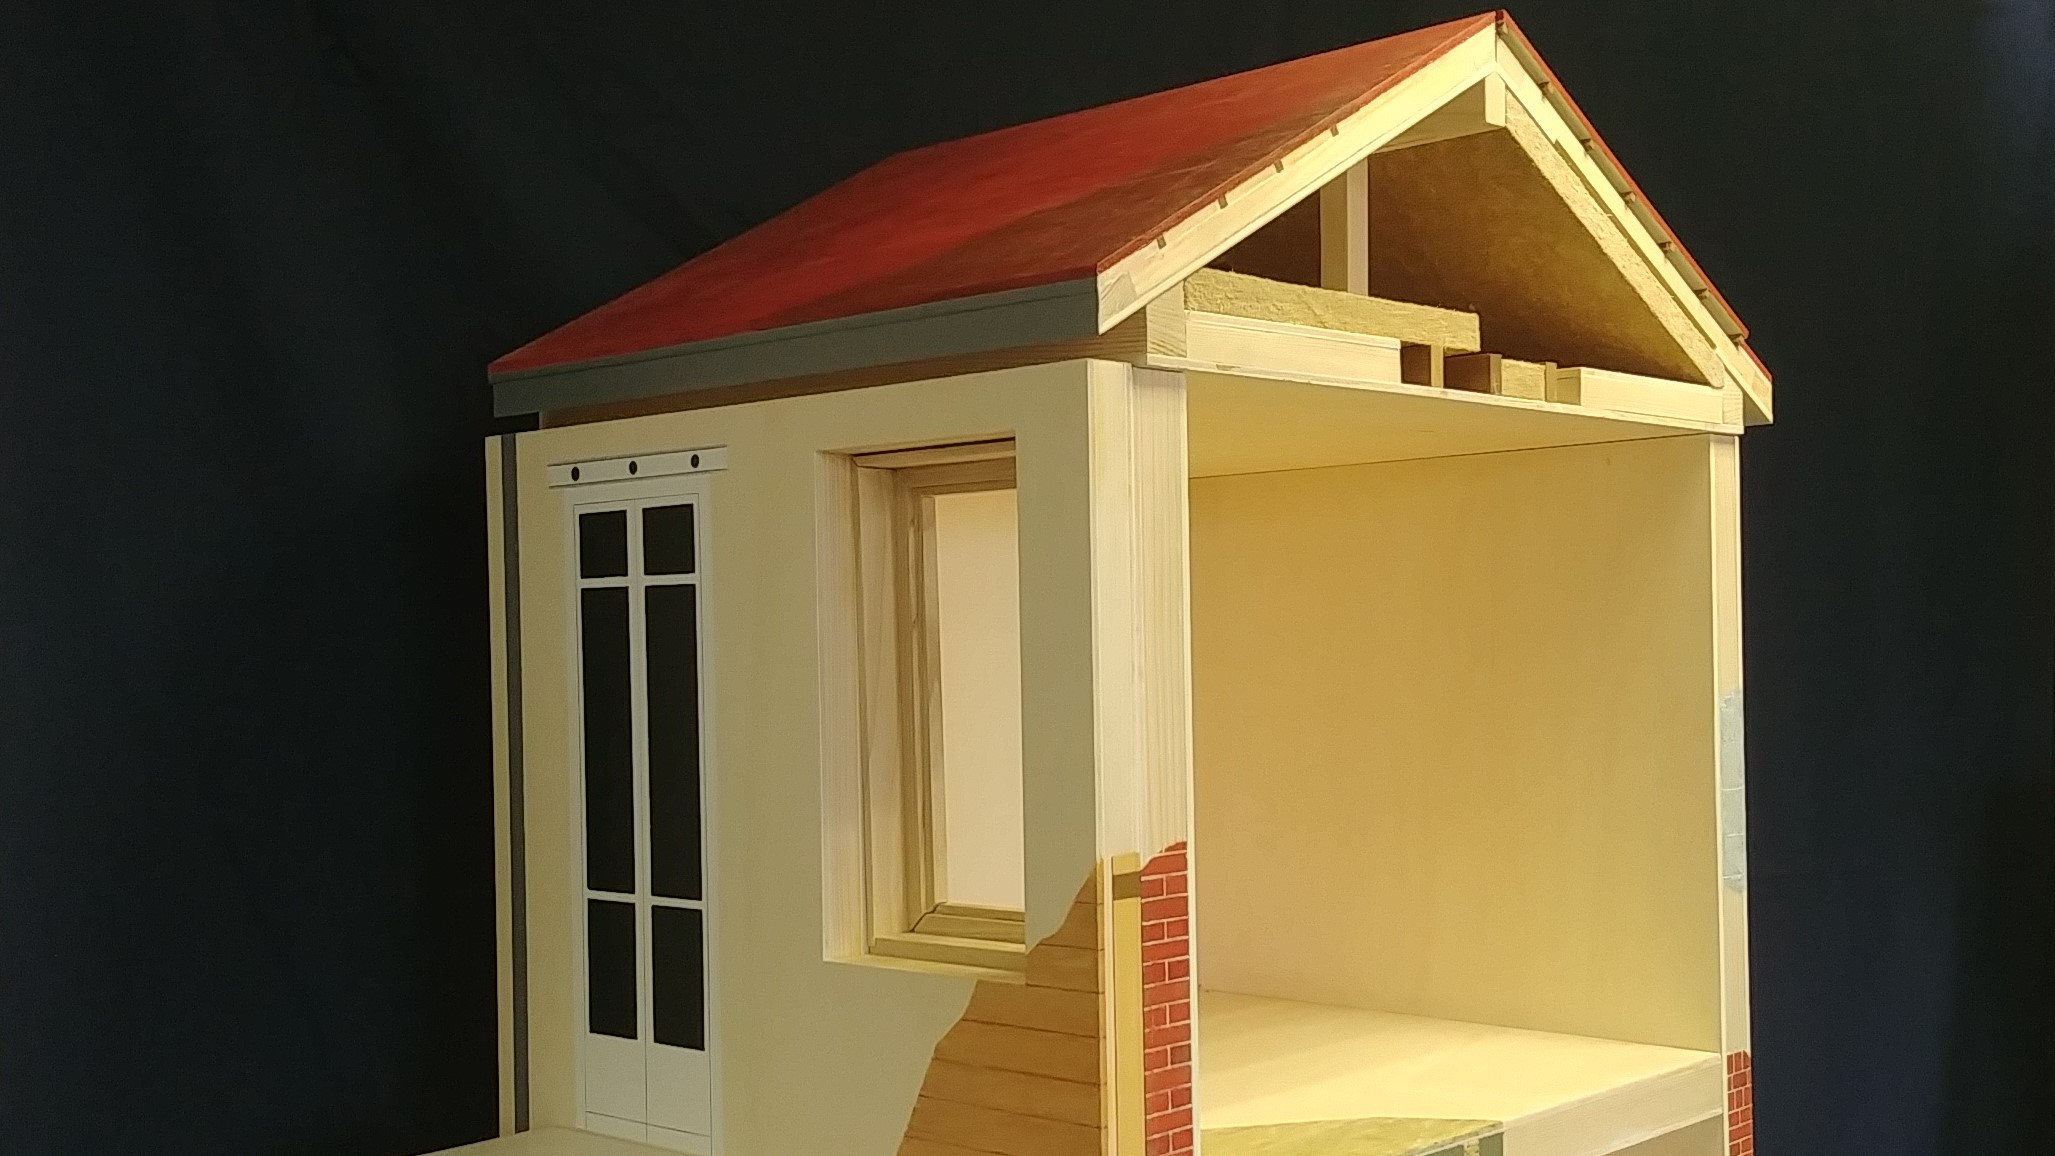 La maquette maison, nouvel outil pédagogique – Construire Solidaire